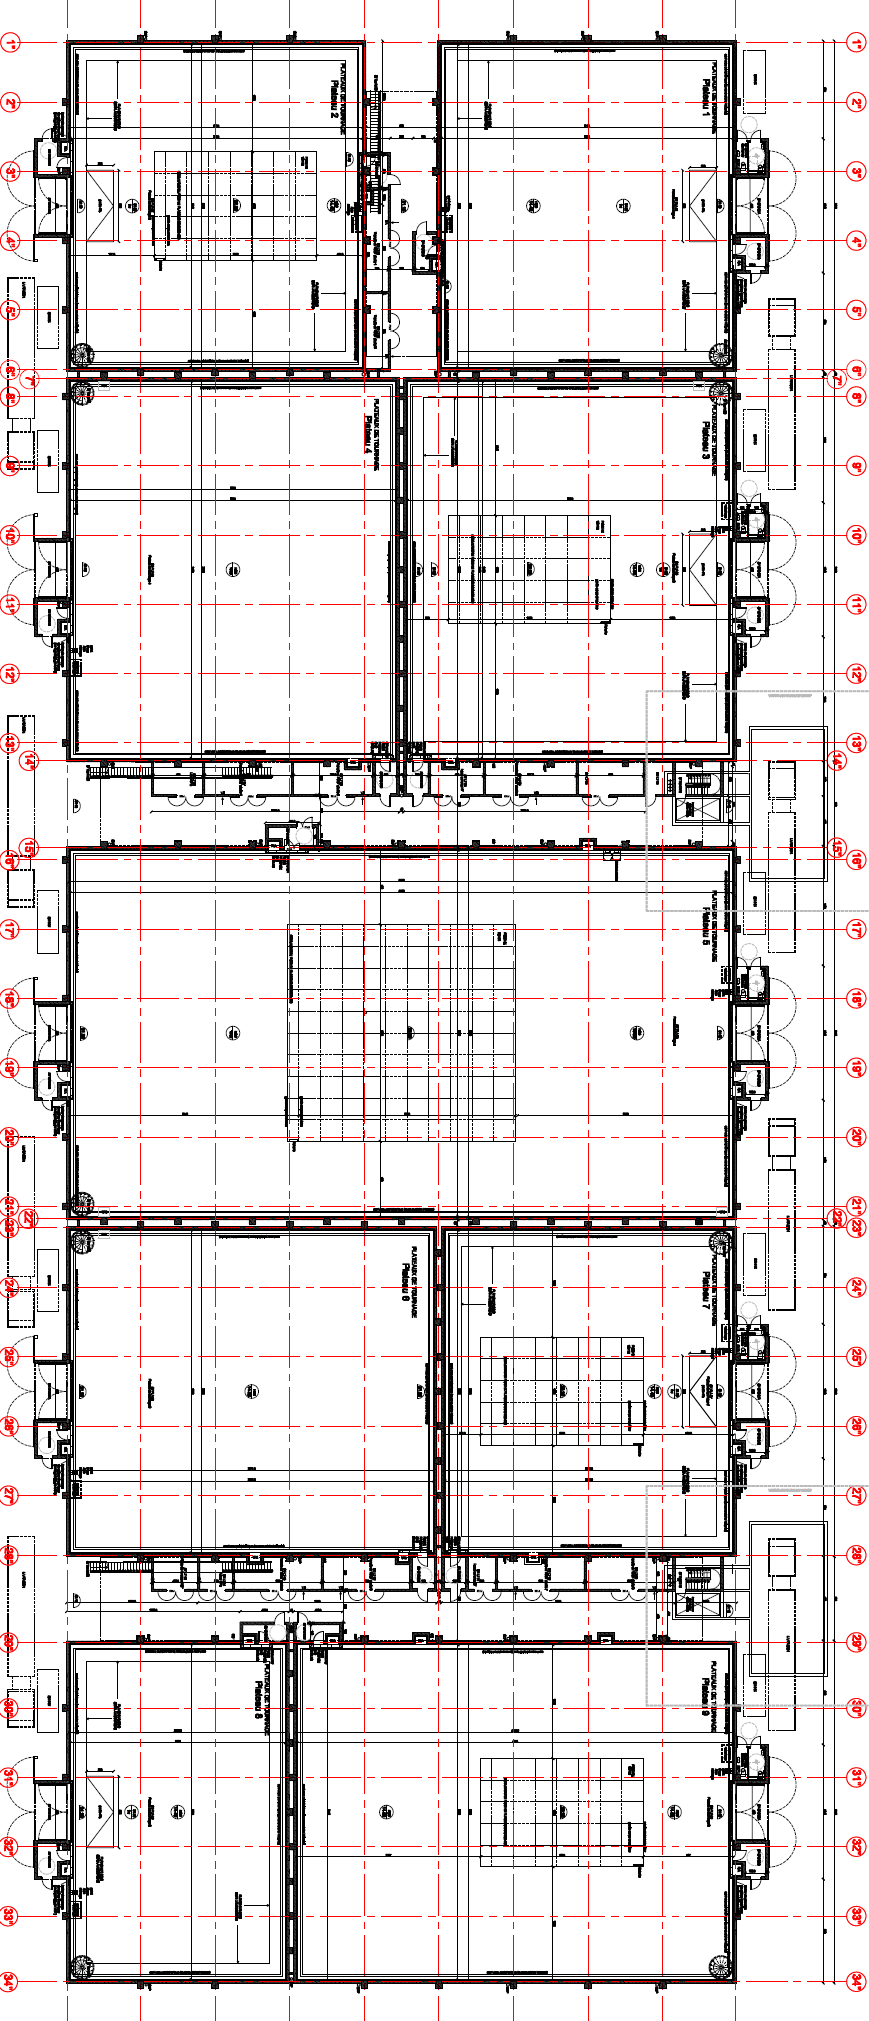 Plans des plateaux de tournage Emplacements de stationnement Zones techniques Zones techniques Studios de Paris Voie de circulation périphérique 600 m² HSG 14,50 m 1 000 m² HSG 14,50m 2 000 m² HSG 16